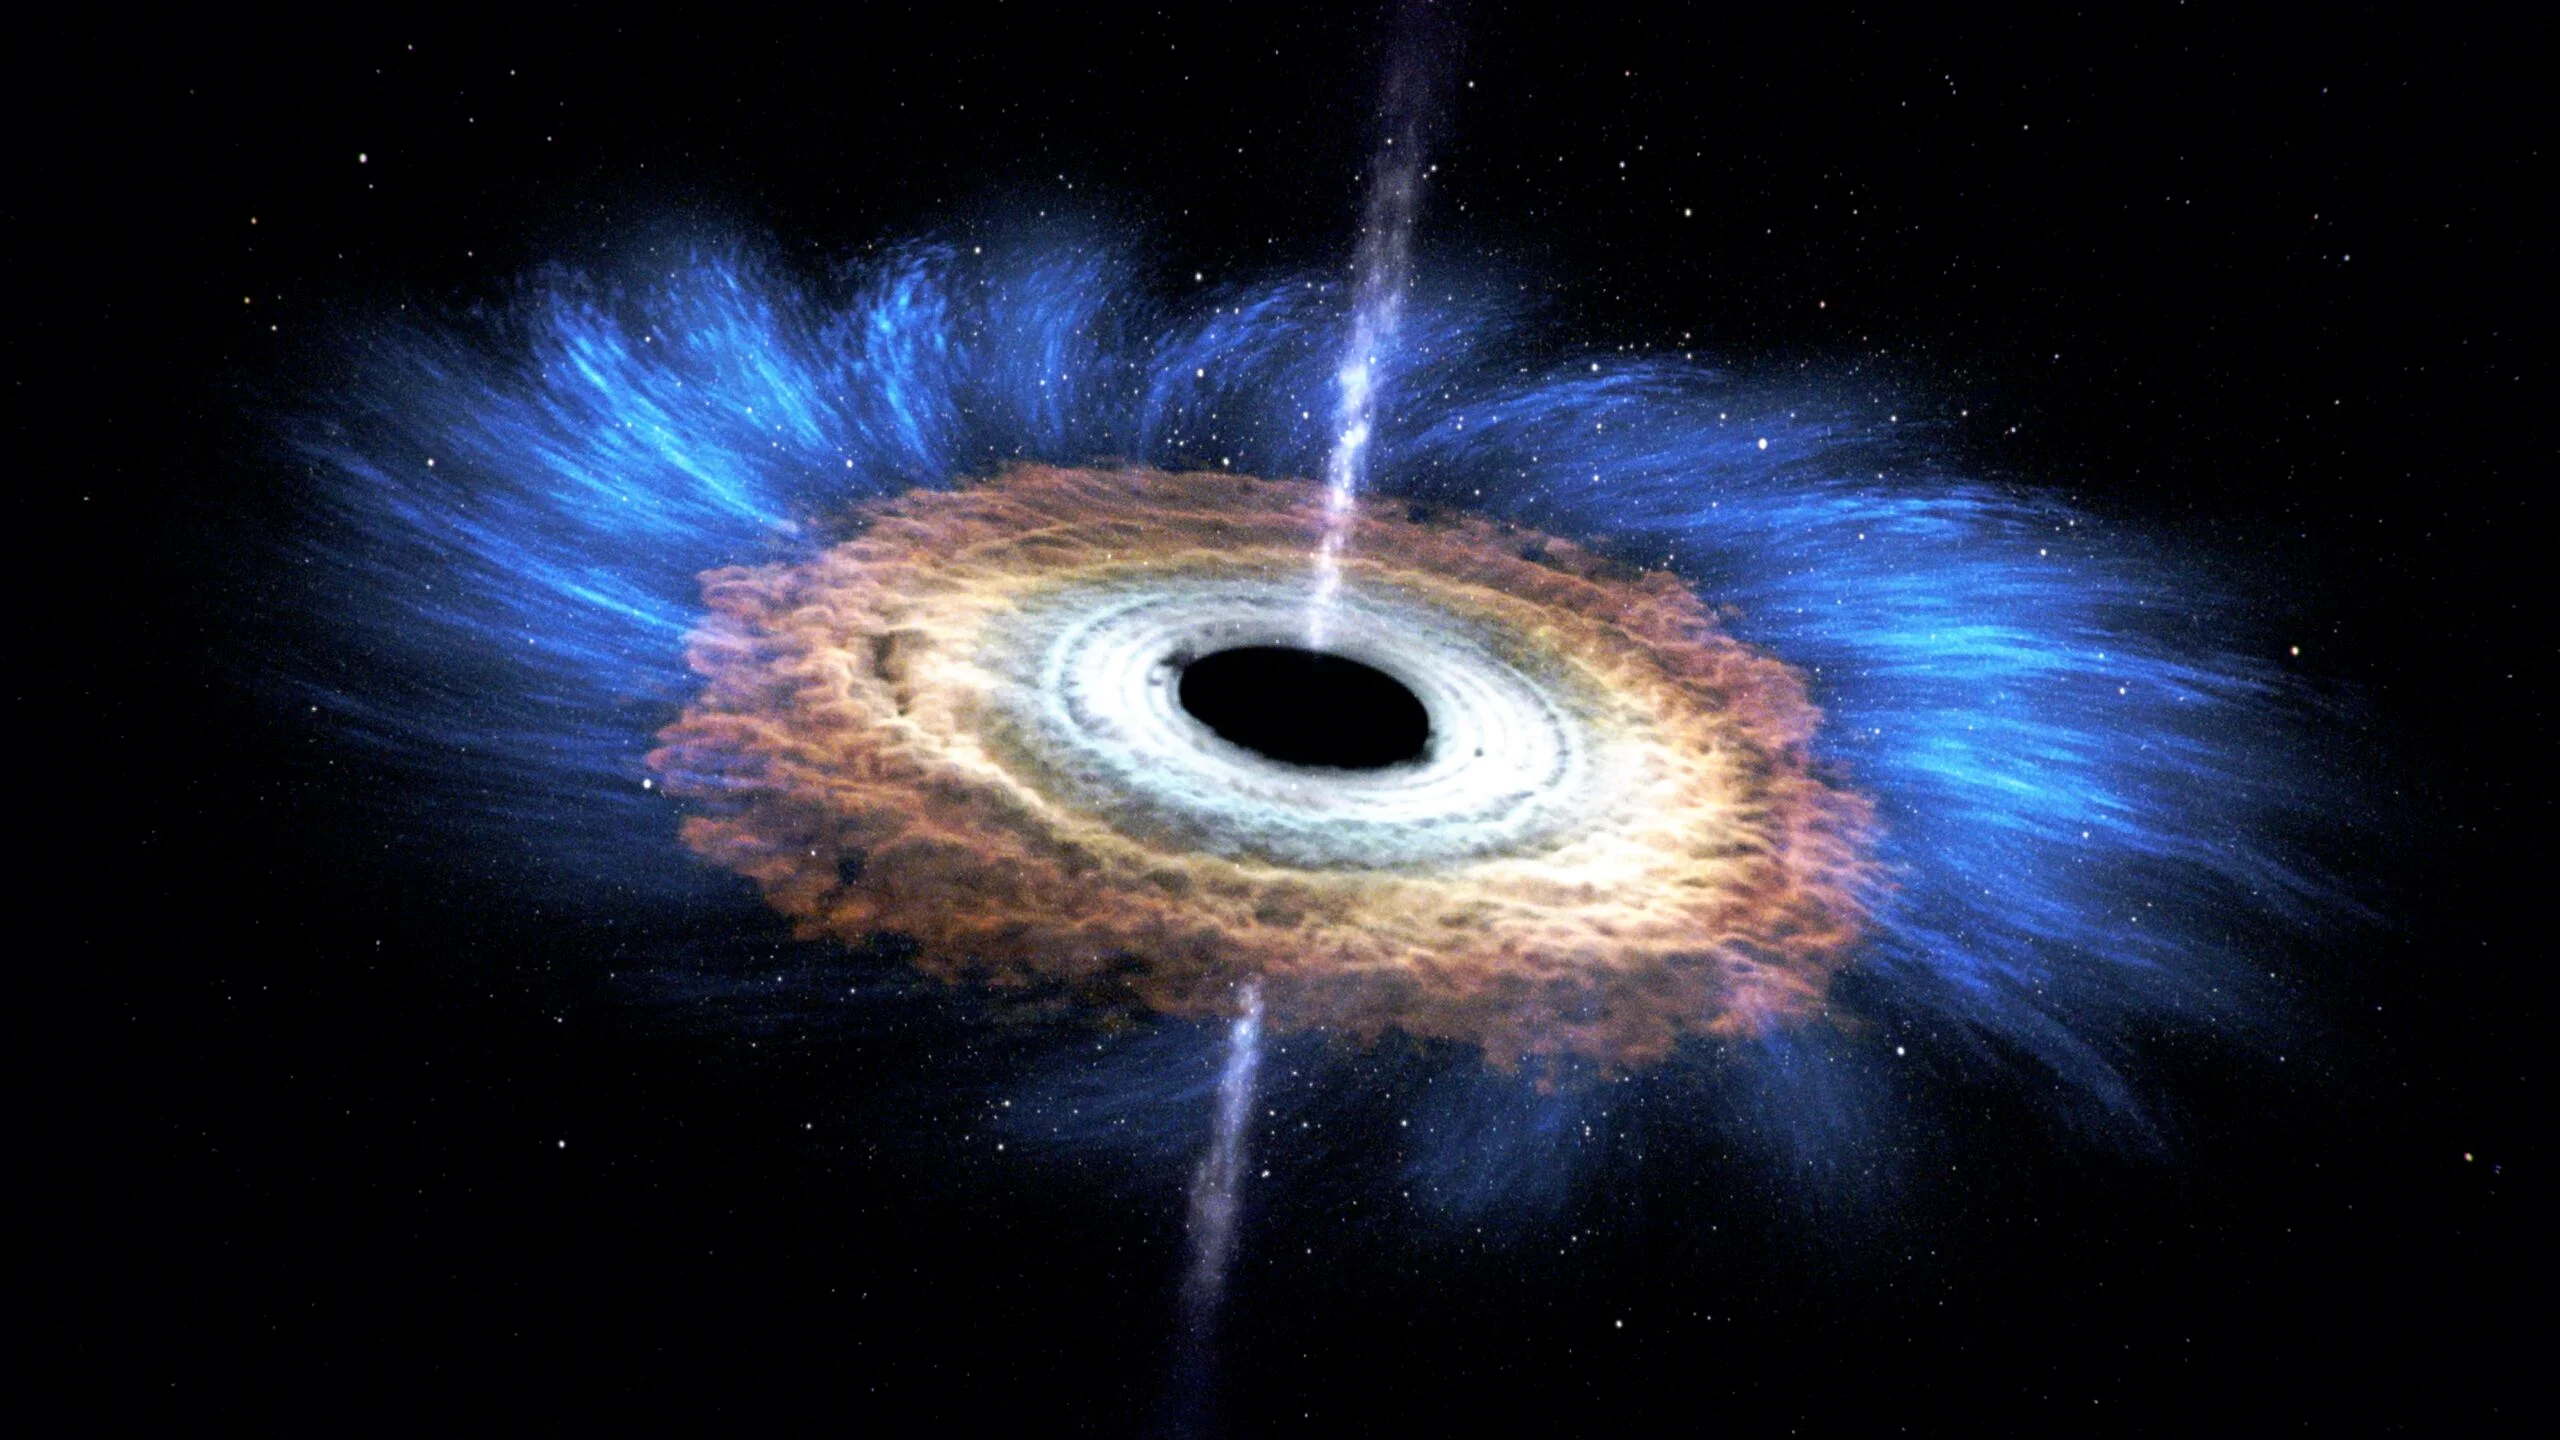 Le trou noir supermassif au centre de notre galaxie est en train de déchirer et de dévorer un objet inconnu X7 d'une masse d'environ 50 masses terrestres et d'une vitesse de 4 millions de km/h.